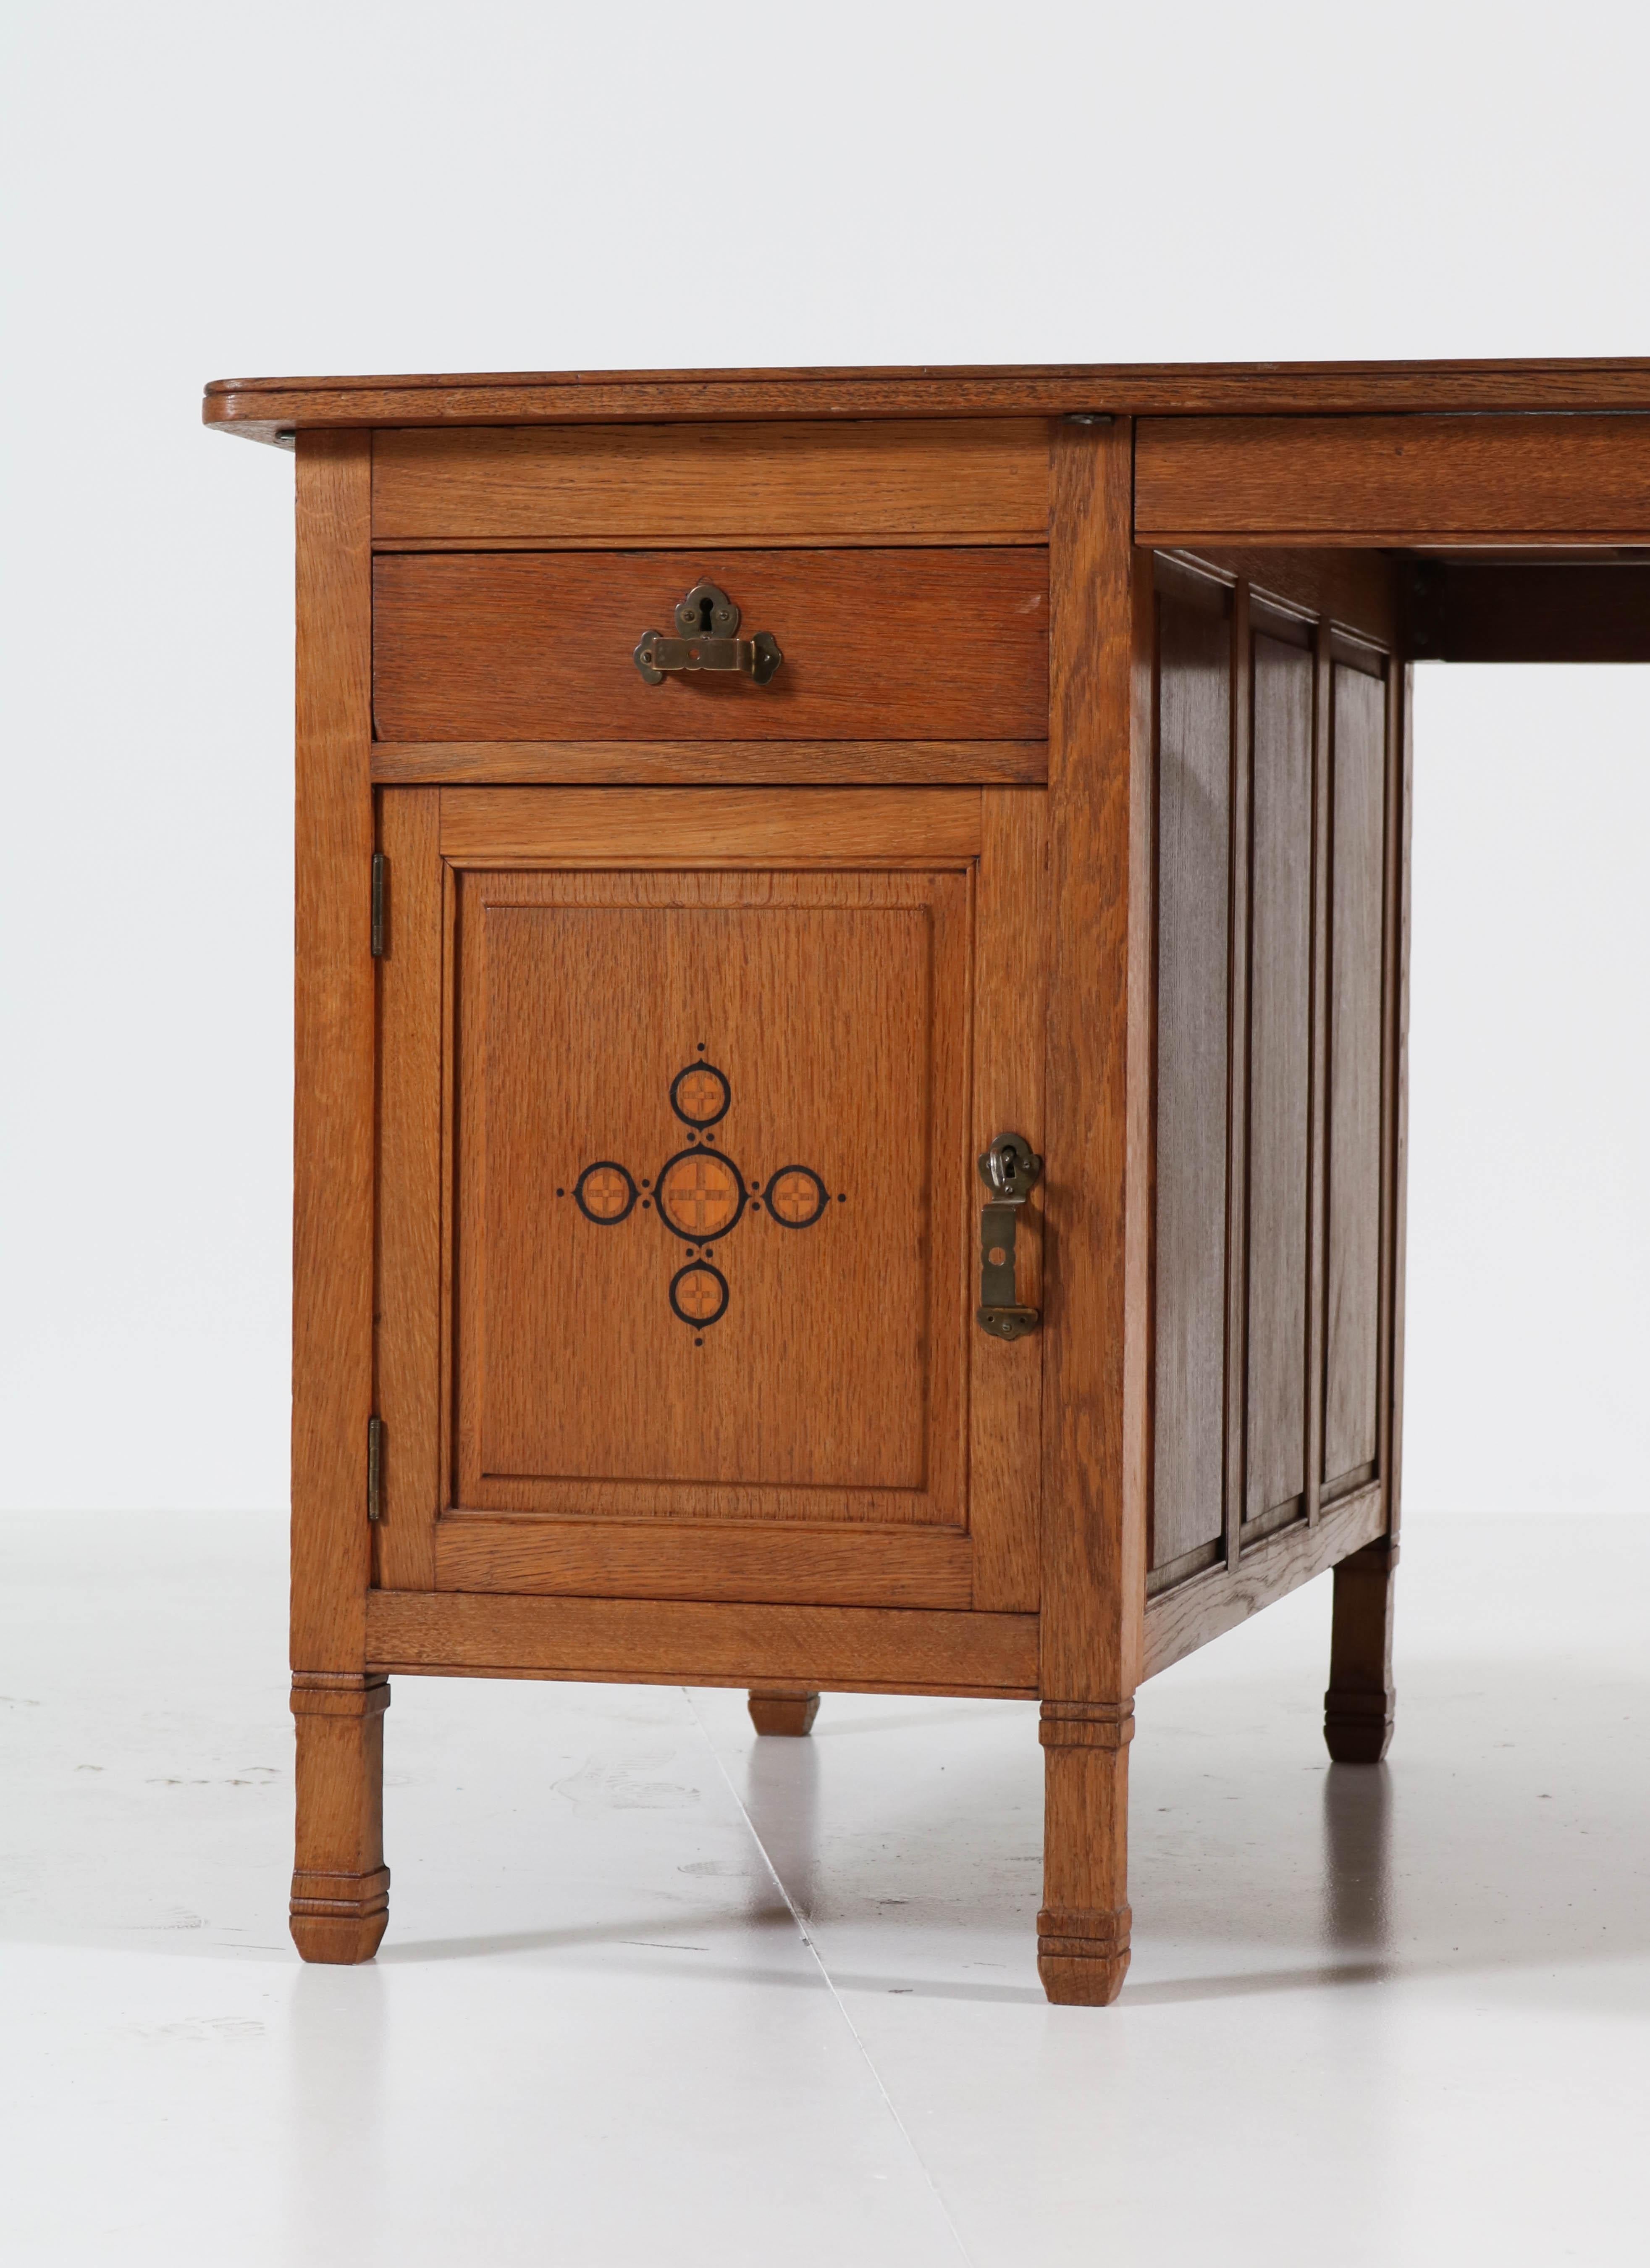 Early 20th Century Dutch Oak Art Nouveau Arts & Crafts Partners Desk by K.P.C. de Bazel, 1900s